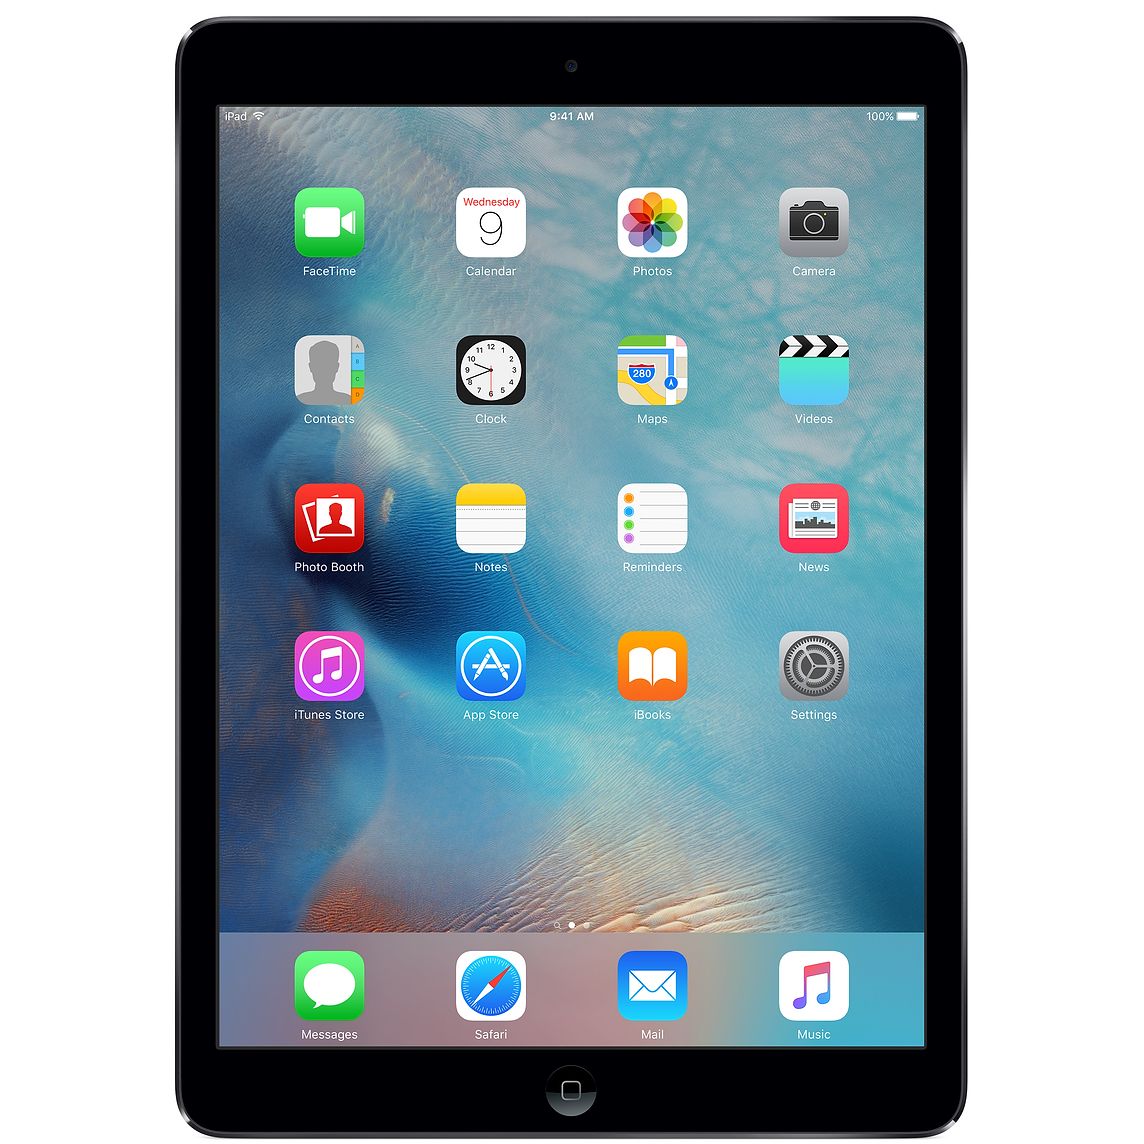 Apple iPad Air 2 16Go 4G - Gris Sidéral - Débloqué (Reconditionné)